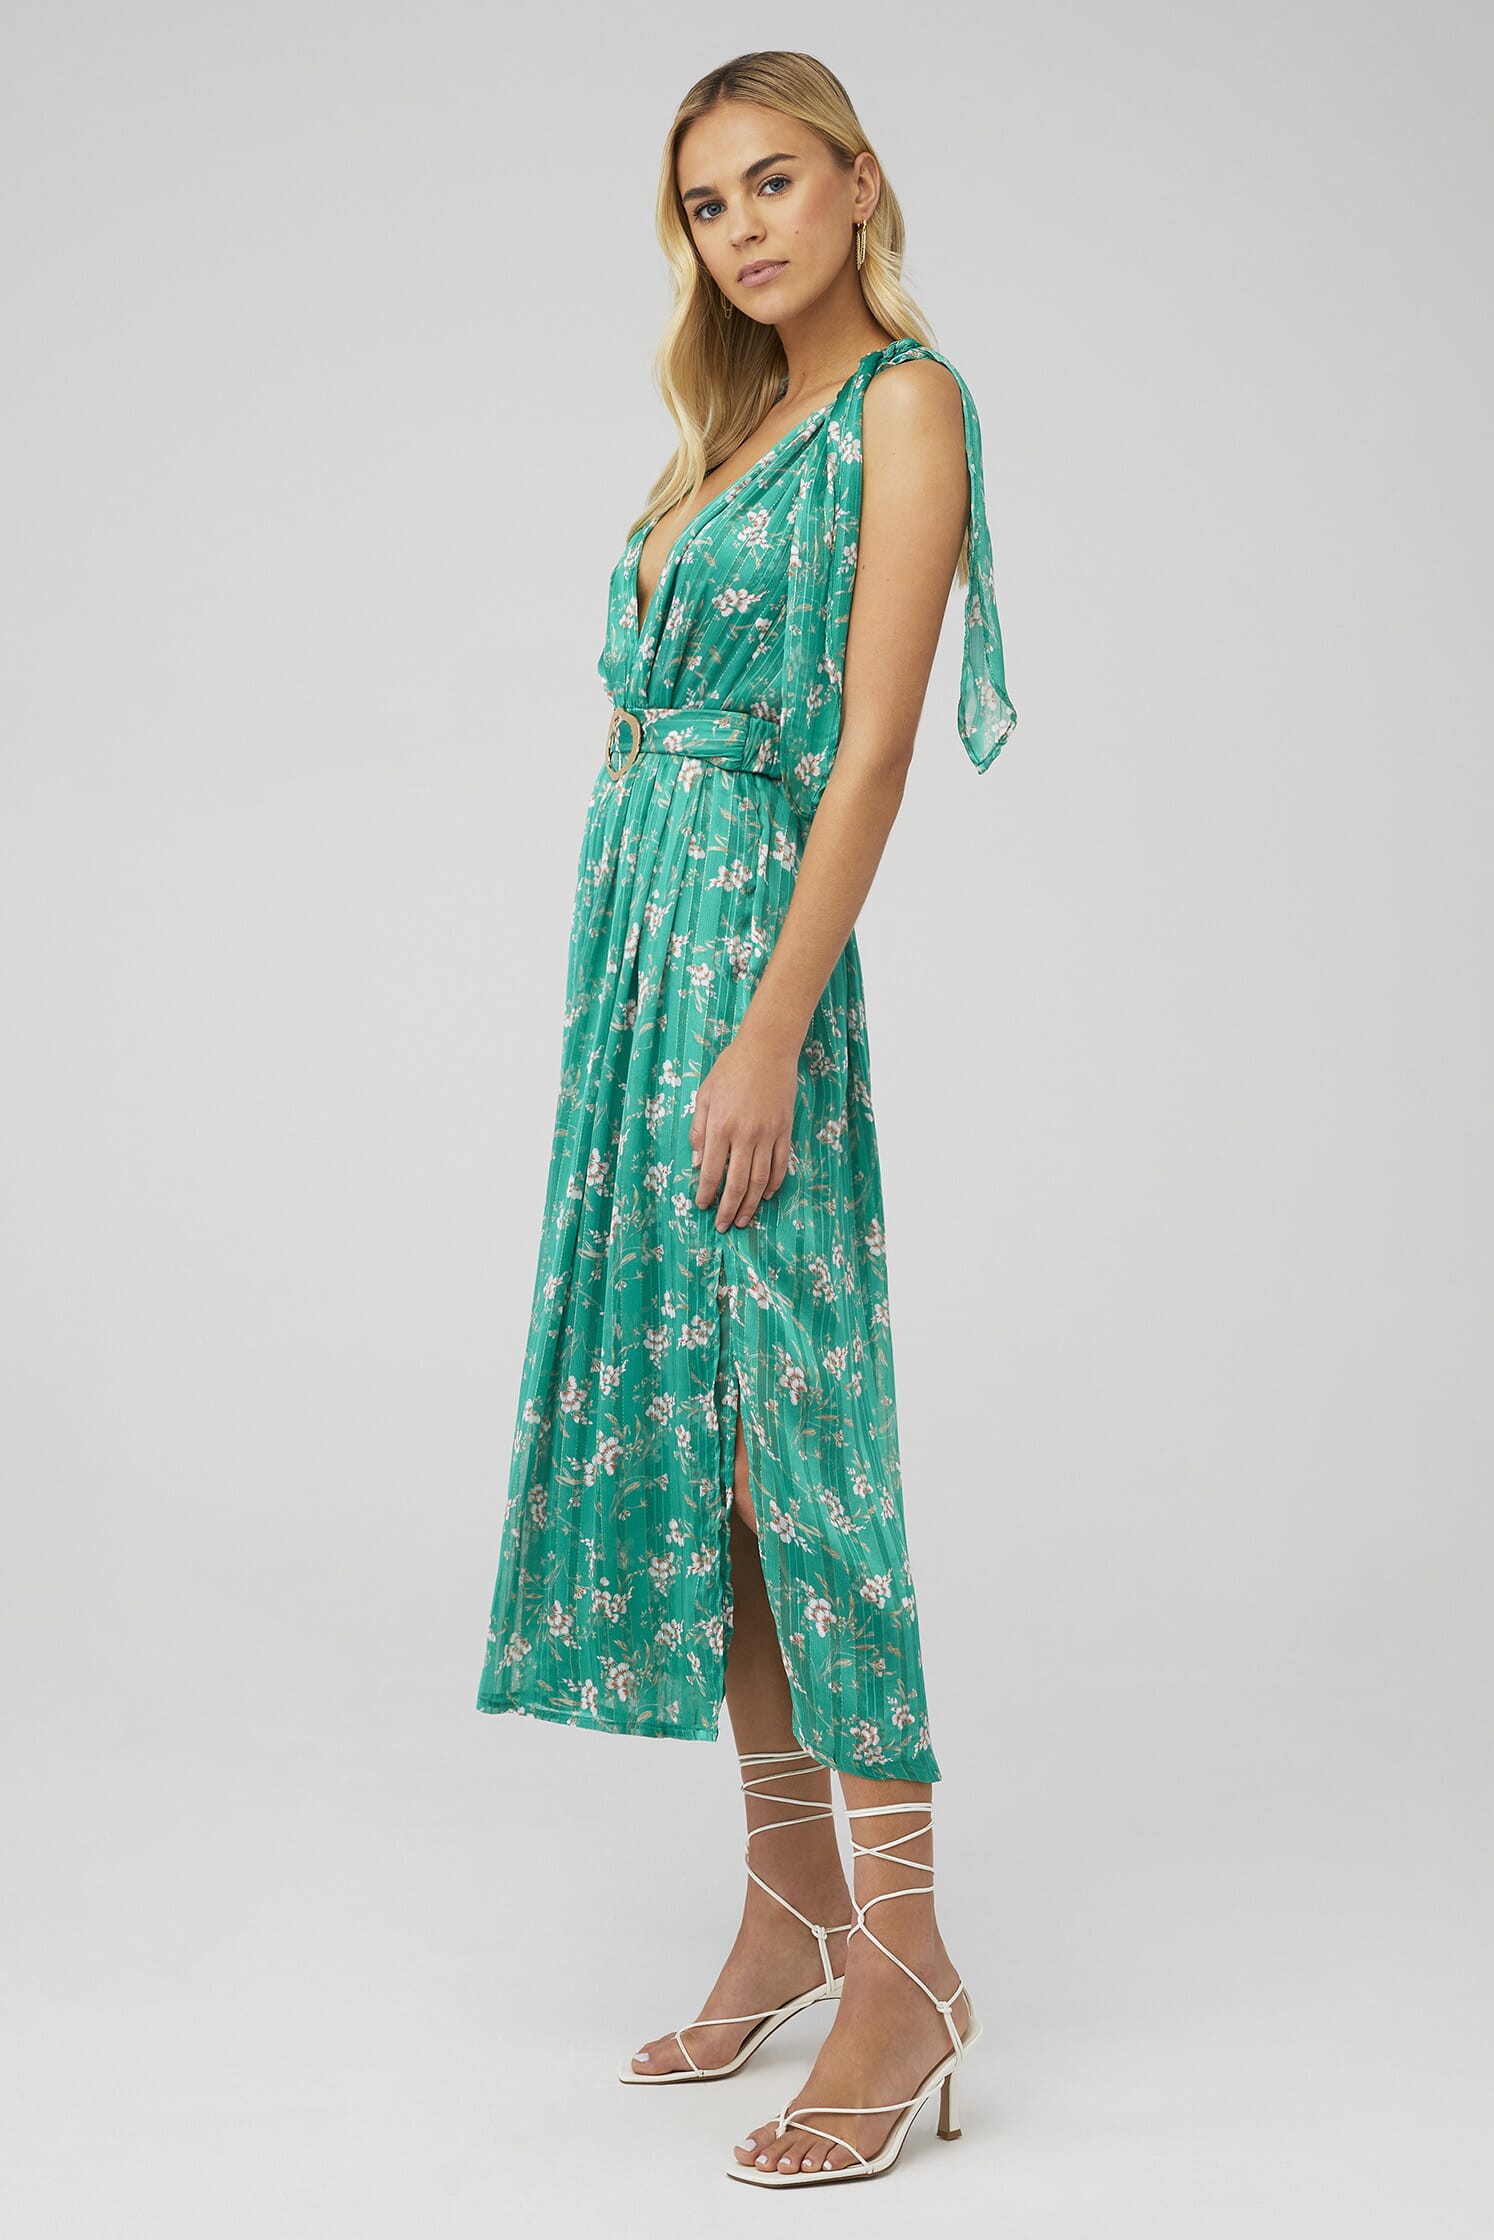 SABINA MUSAYEV | Kimber Dress in Green Floral | FashionPass